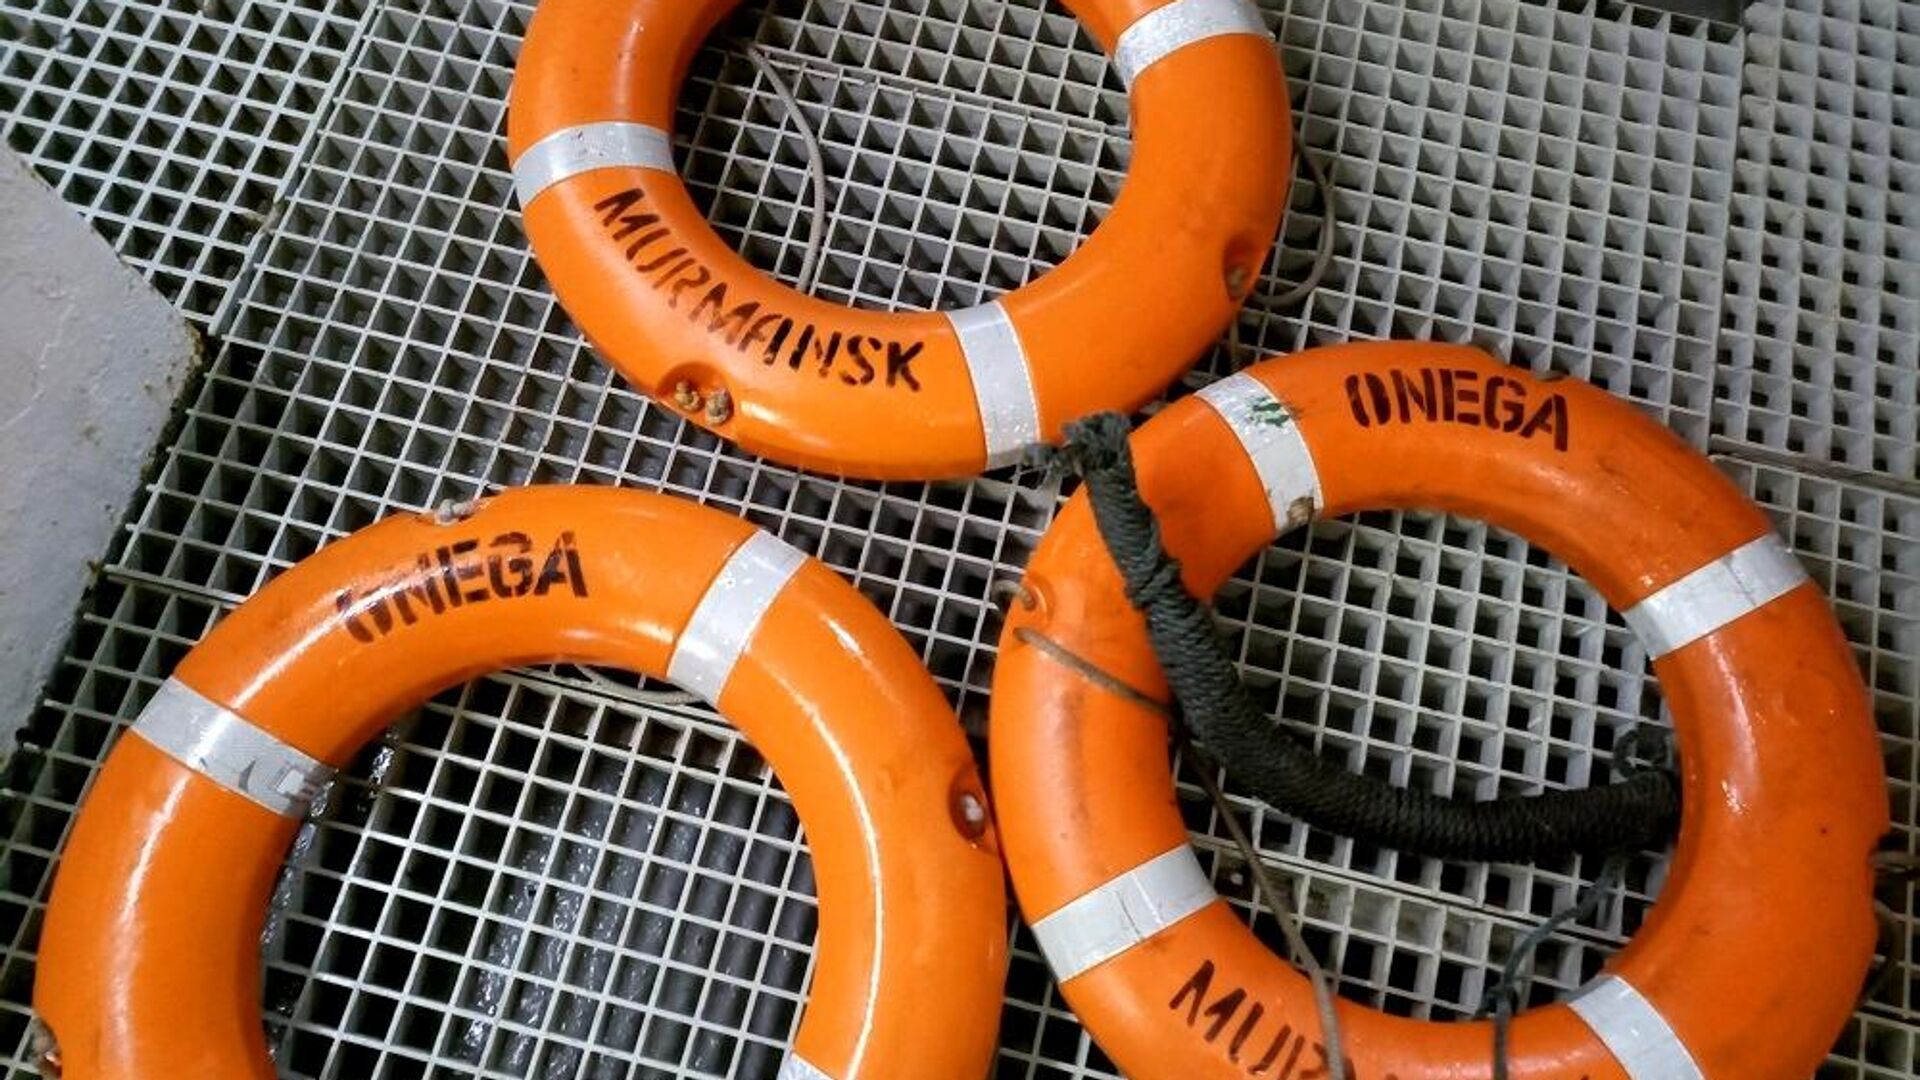 Спасательные круги с затонувшего рыболовного судна Онега, обнаруженные в ходе поисковой операции в Баренцевом море - РИА Новости, 1920, 30.12.2020